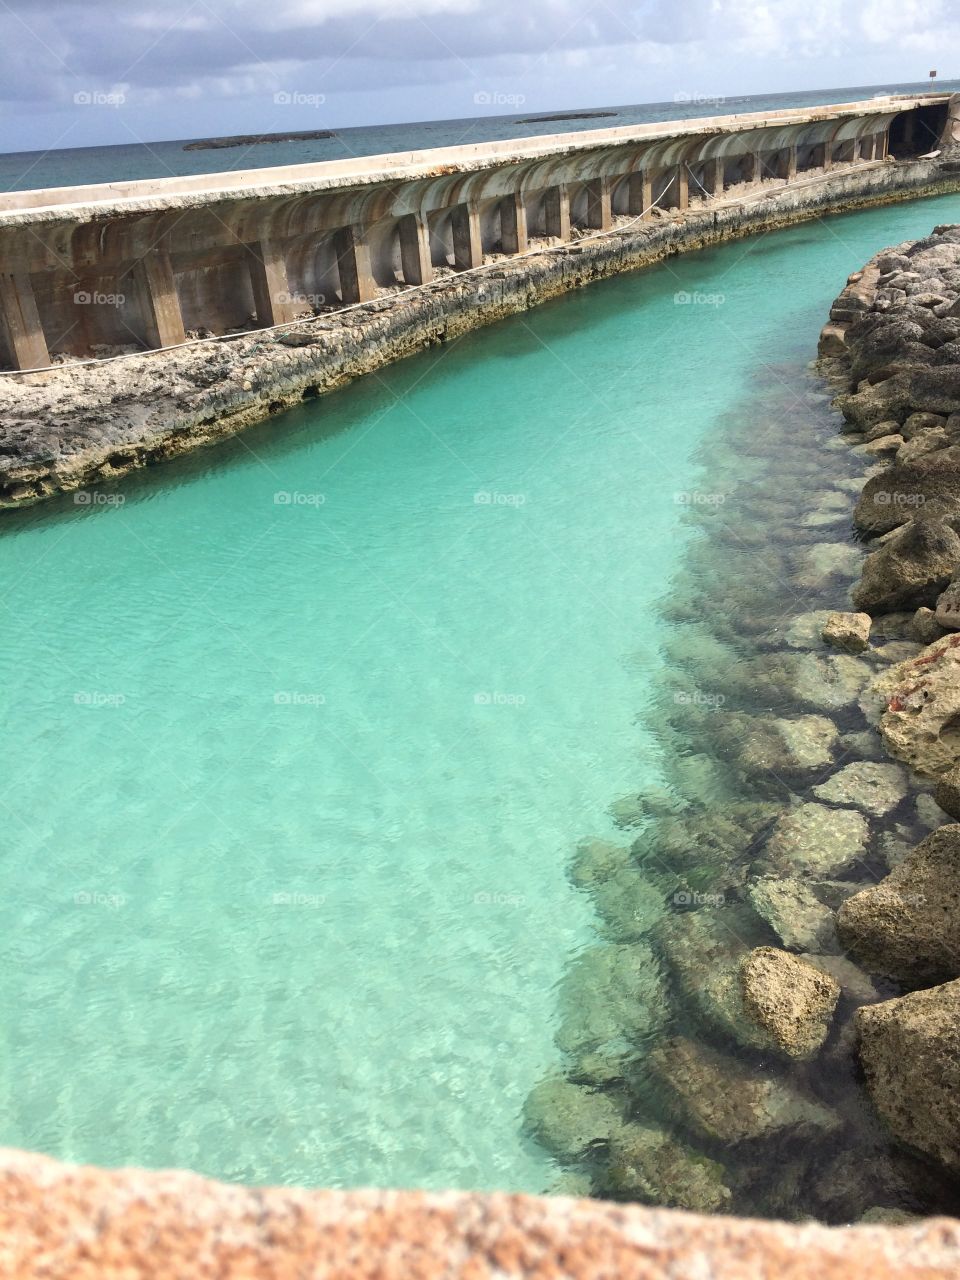 Sea Wall in Nassau, Bahamas at the Atlantis Resort. 